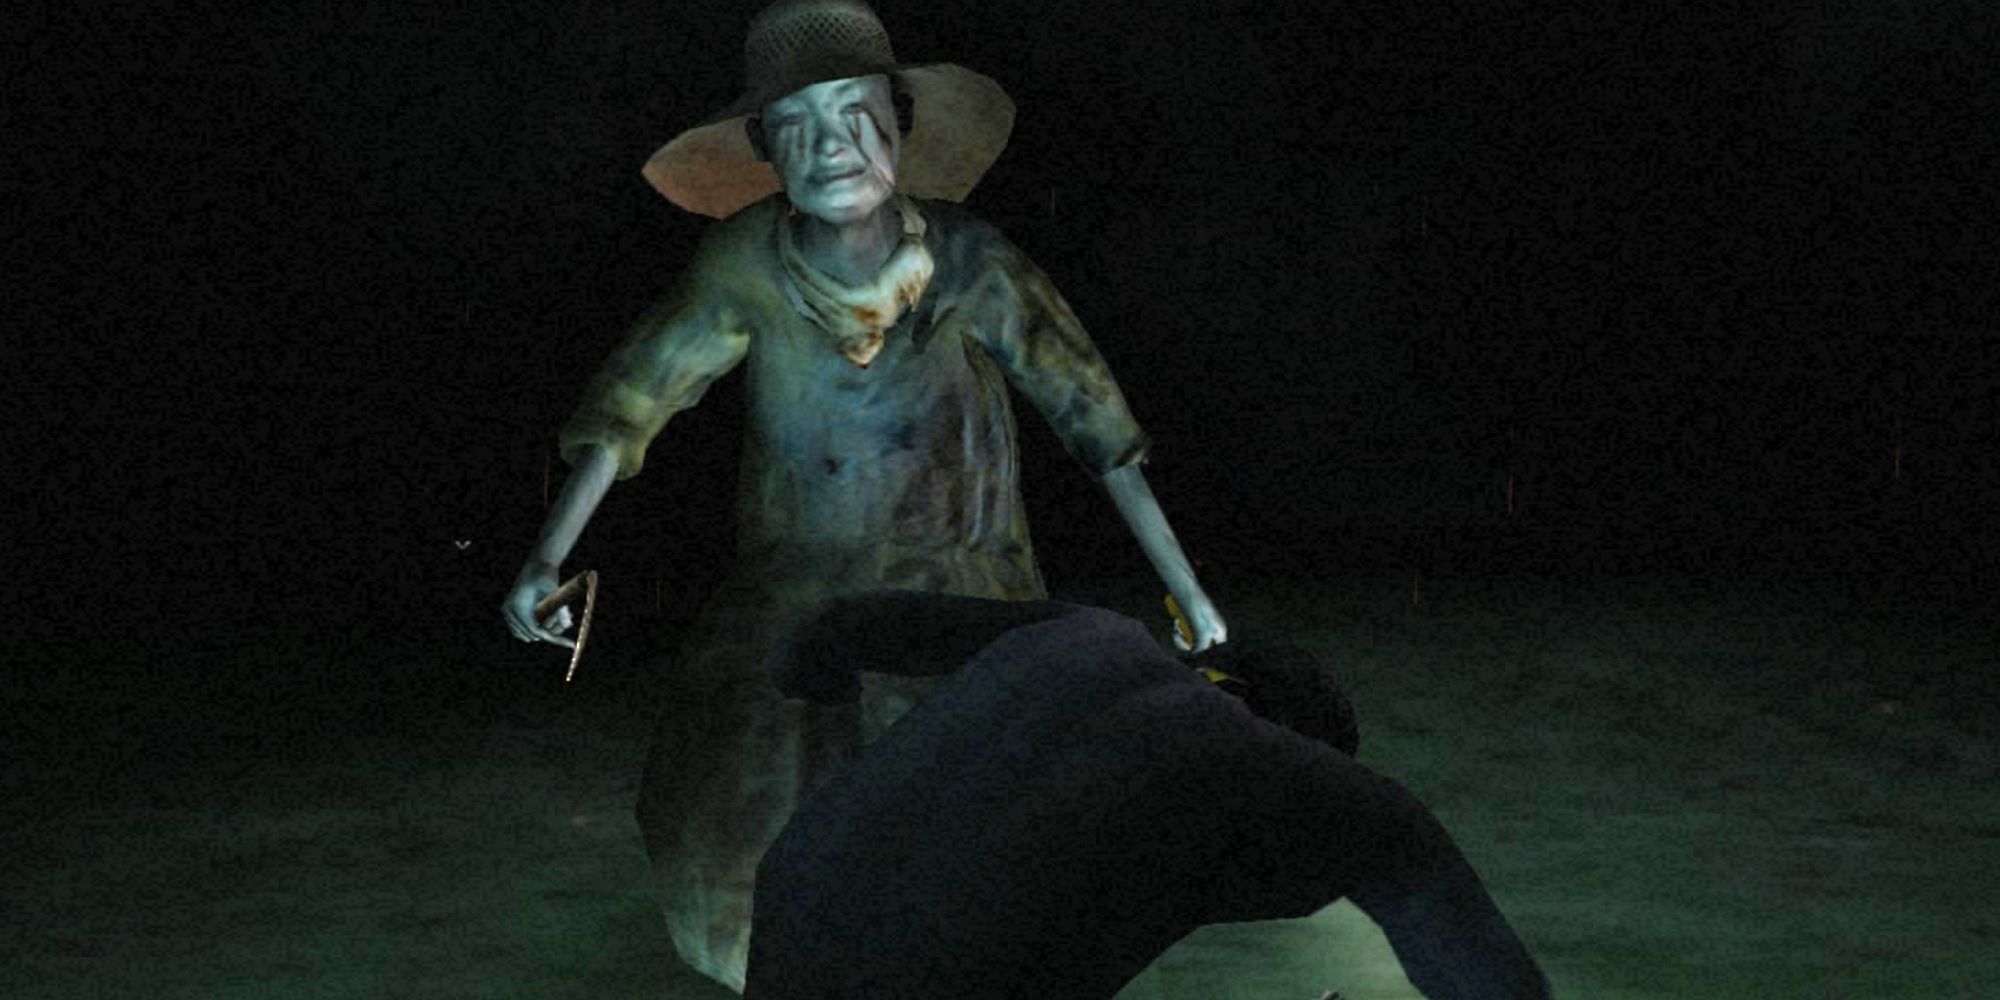 Personagem sendo atacado por um fantasma em Siren (2003)